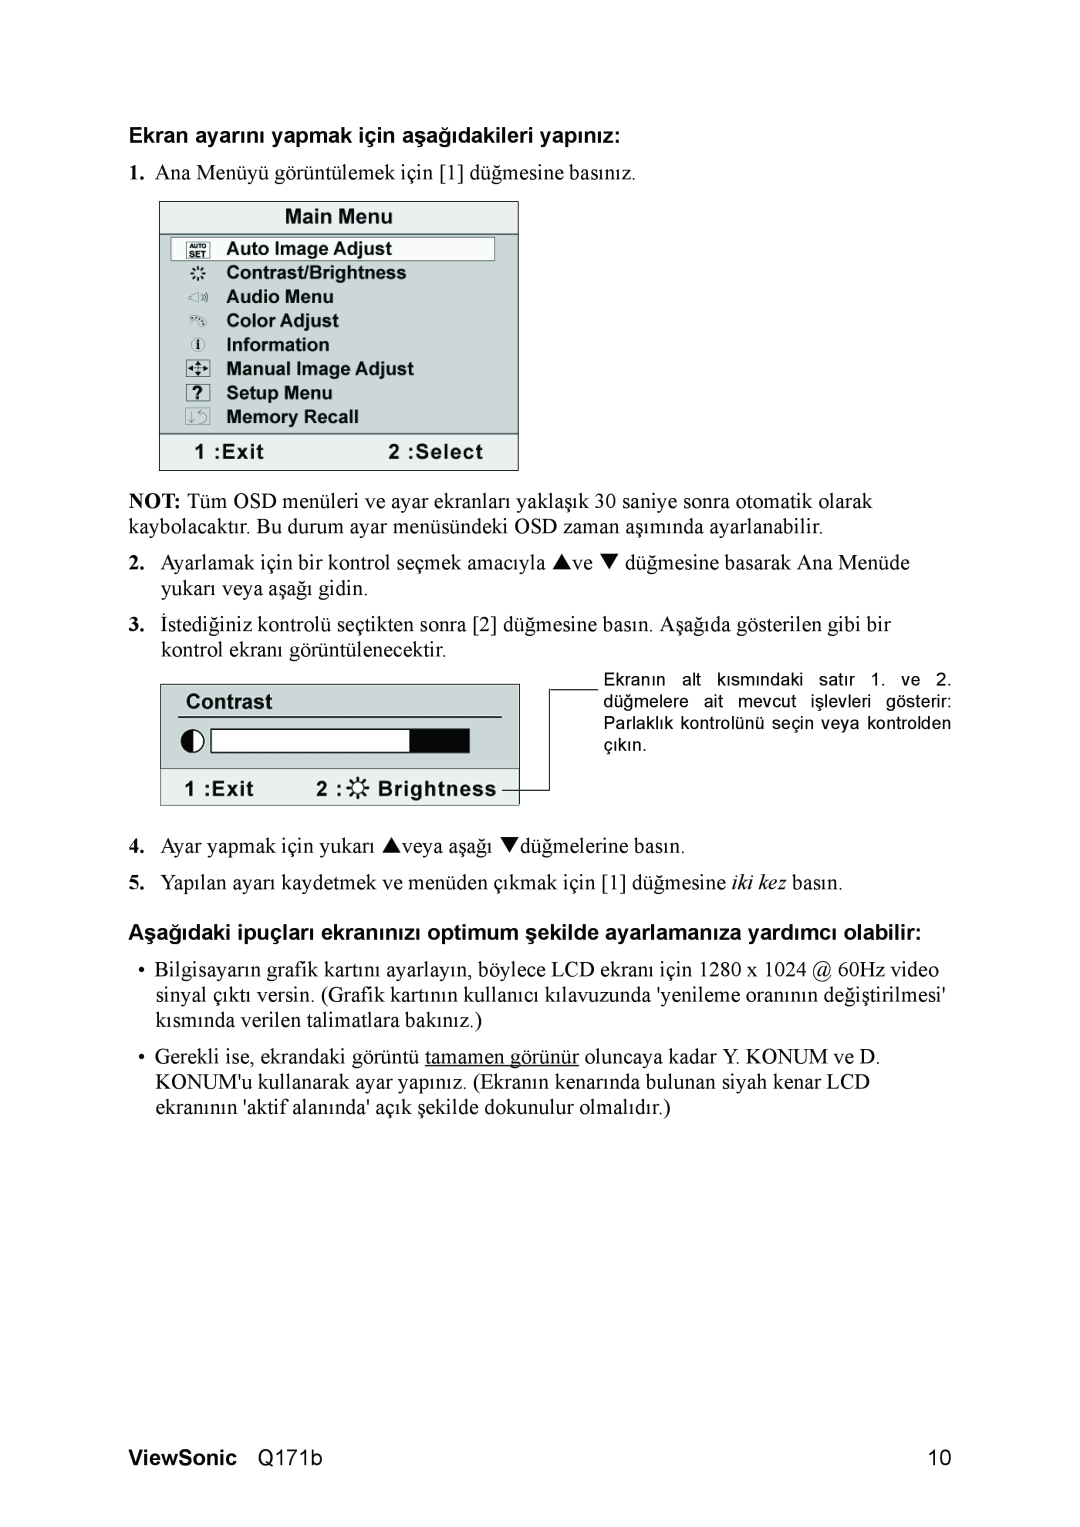 ViewSonic Q171B manual Ekran ayarını yapmak için aşağıdakileri yapınız, ViewSonic Q171b 